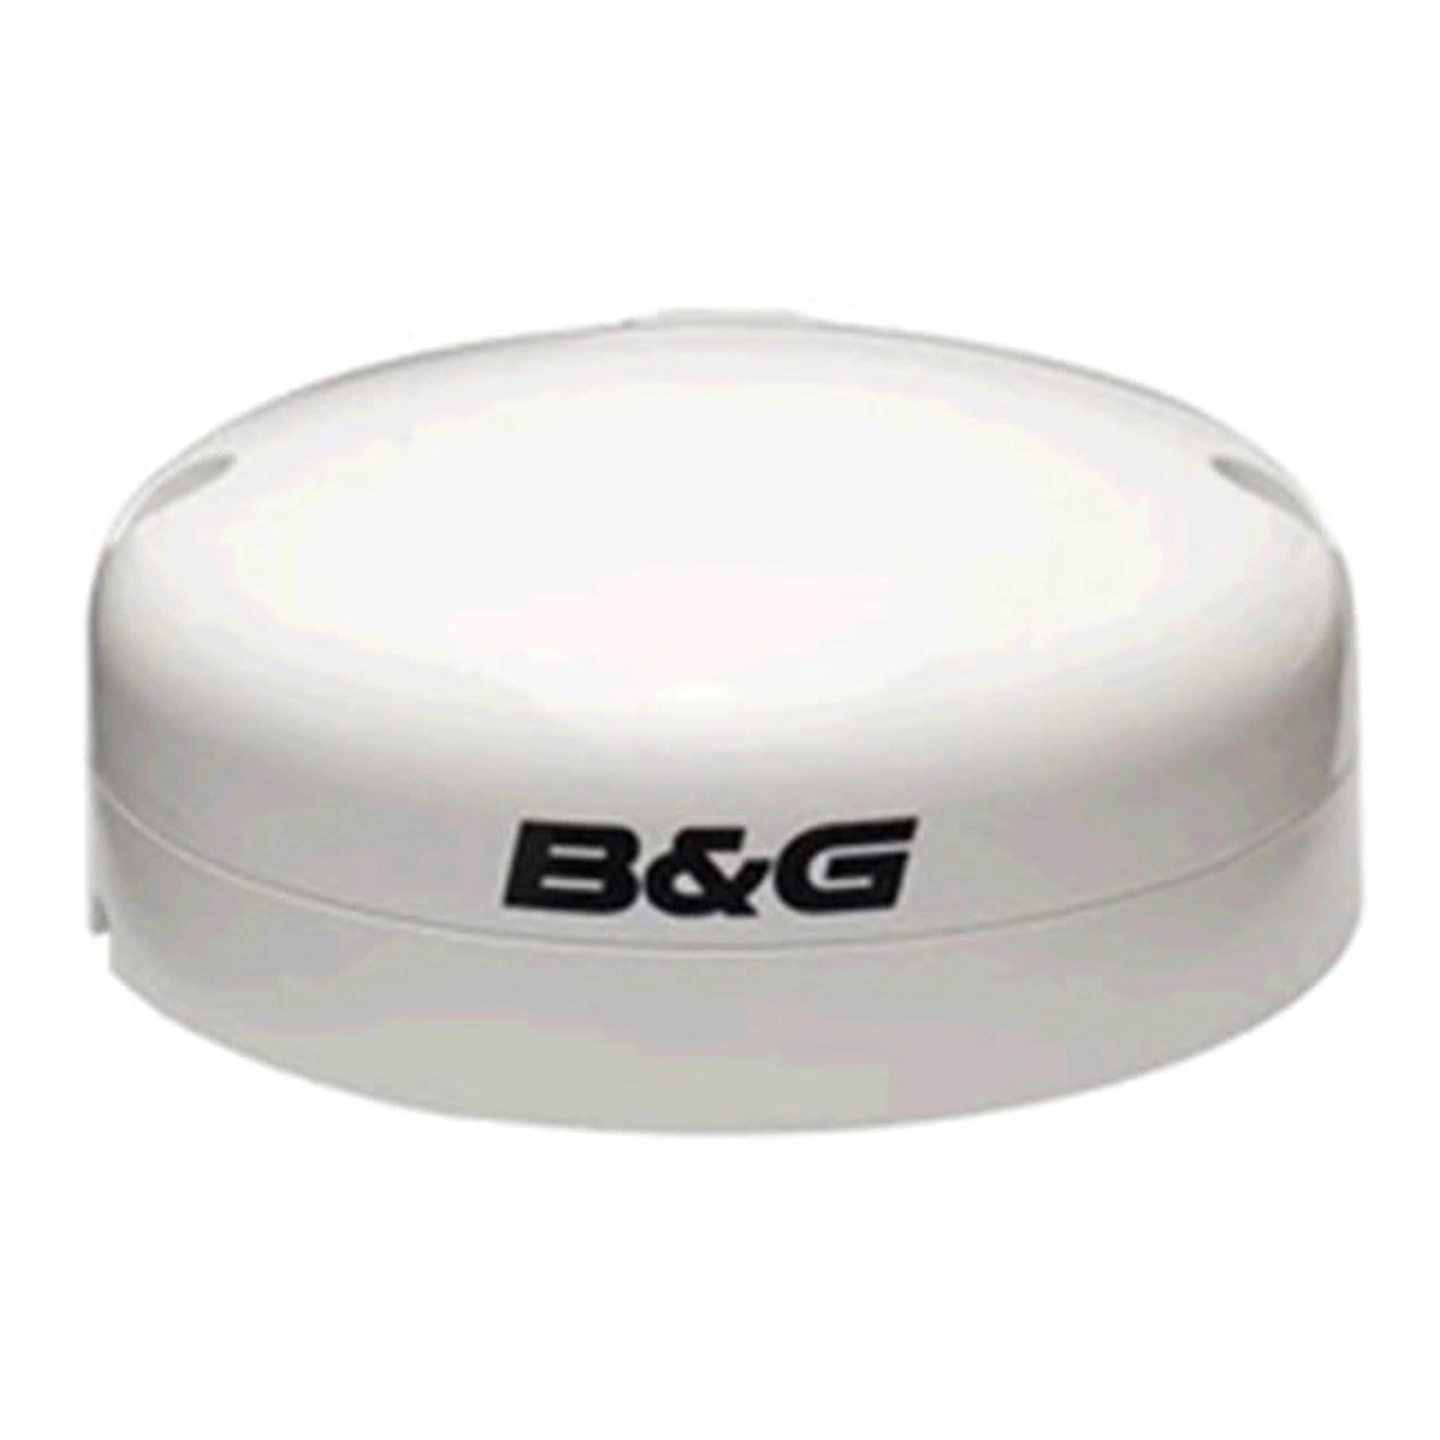 B&G ZG100 GPS-antenne med kompass